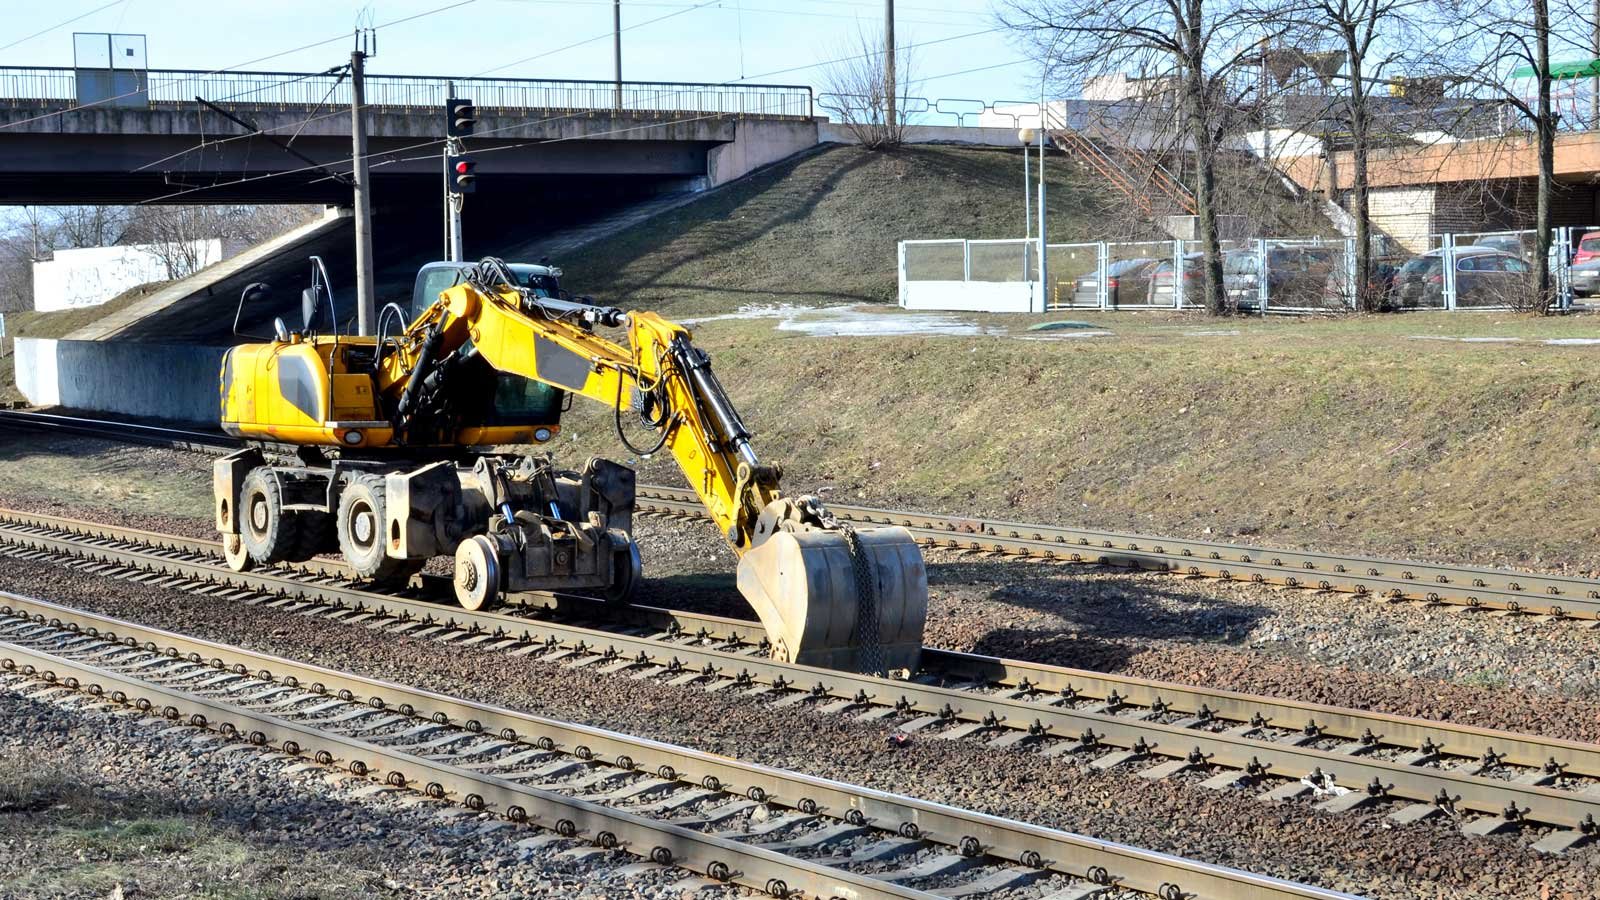 Rail excavator on a train track